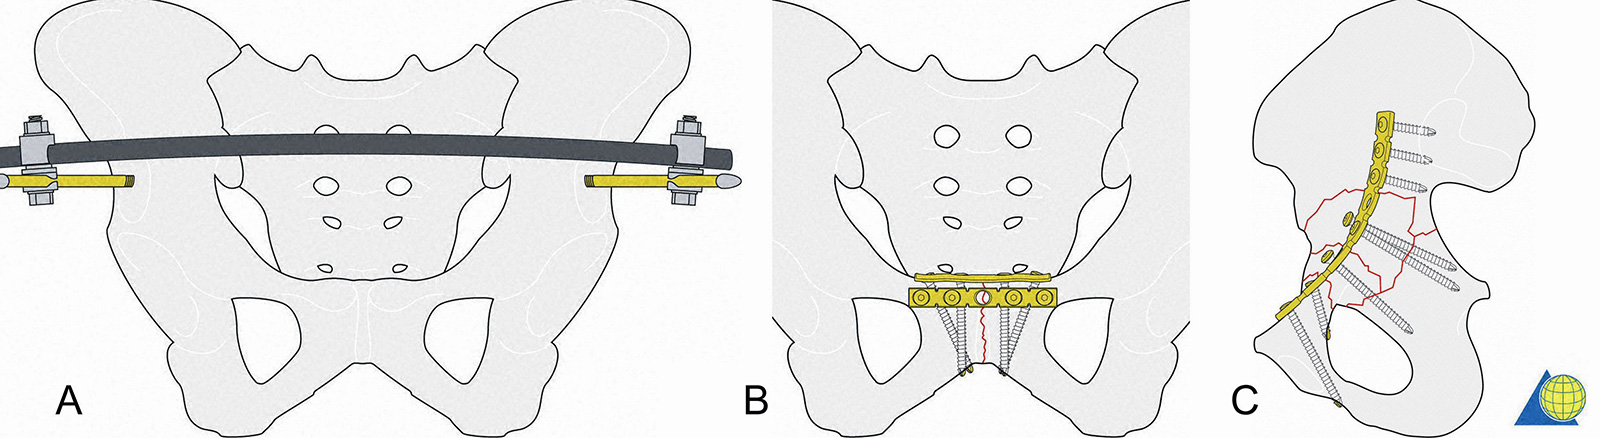 Abb. 3-16: Fixateur extern: Pins im Bereich der Spina ilica anterior inferior (A), Sicherung der Symphyse mit 2 5-Loch Platten (B), anteriore Fixierung mit mindestens 2 Schrauben in das Os pubis, 2 Schrauben in das Os Ilium und diversen Schrauben, die den